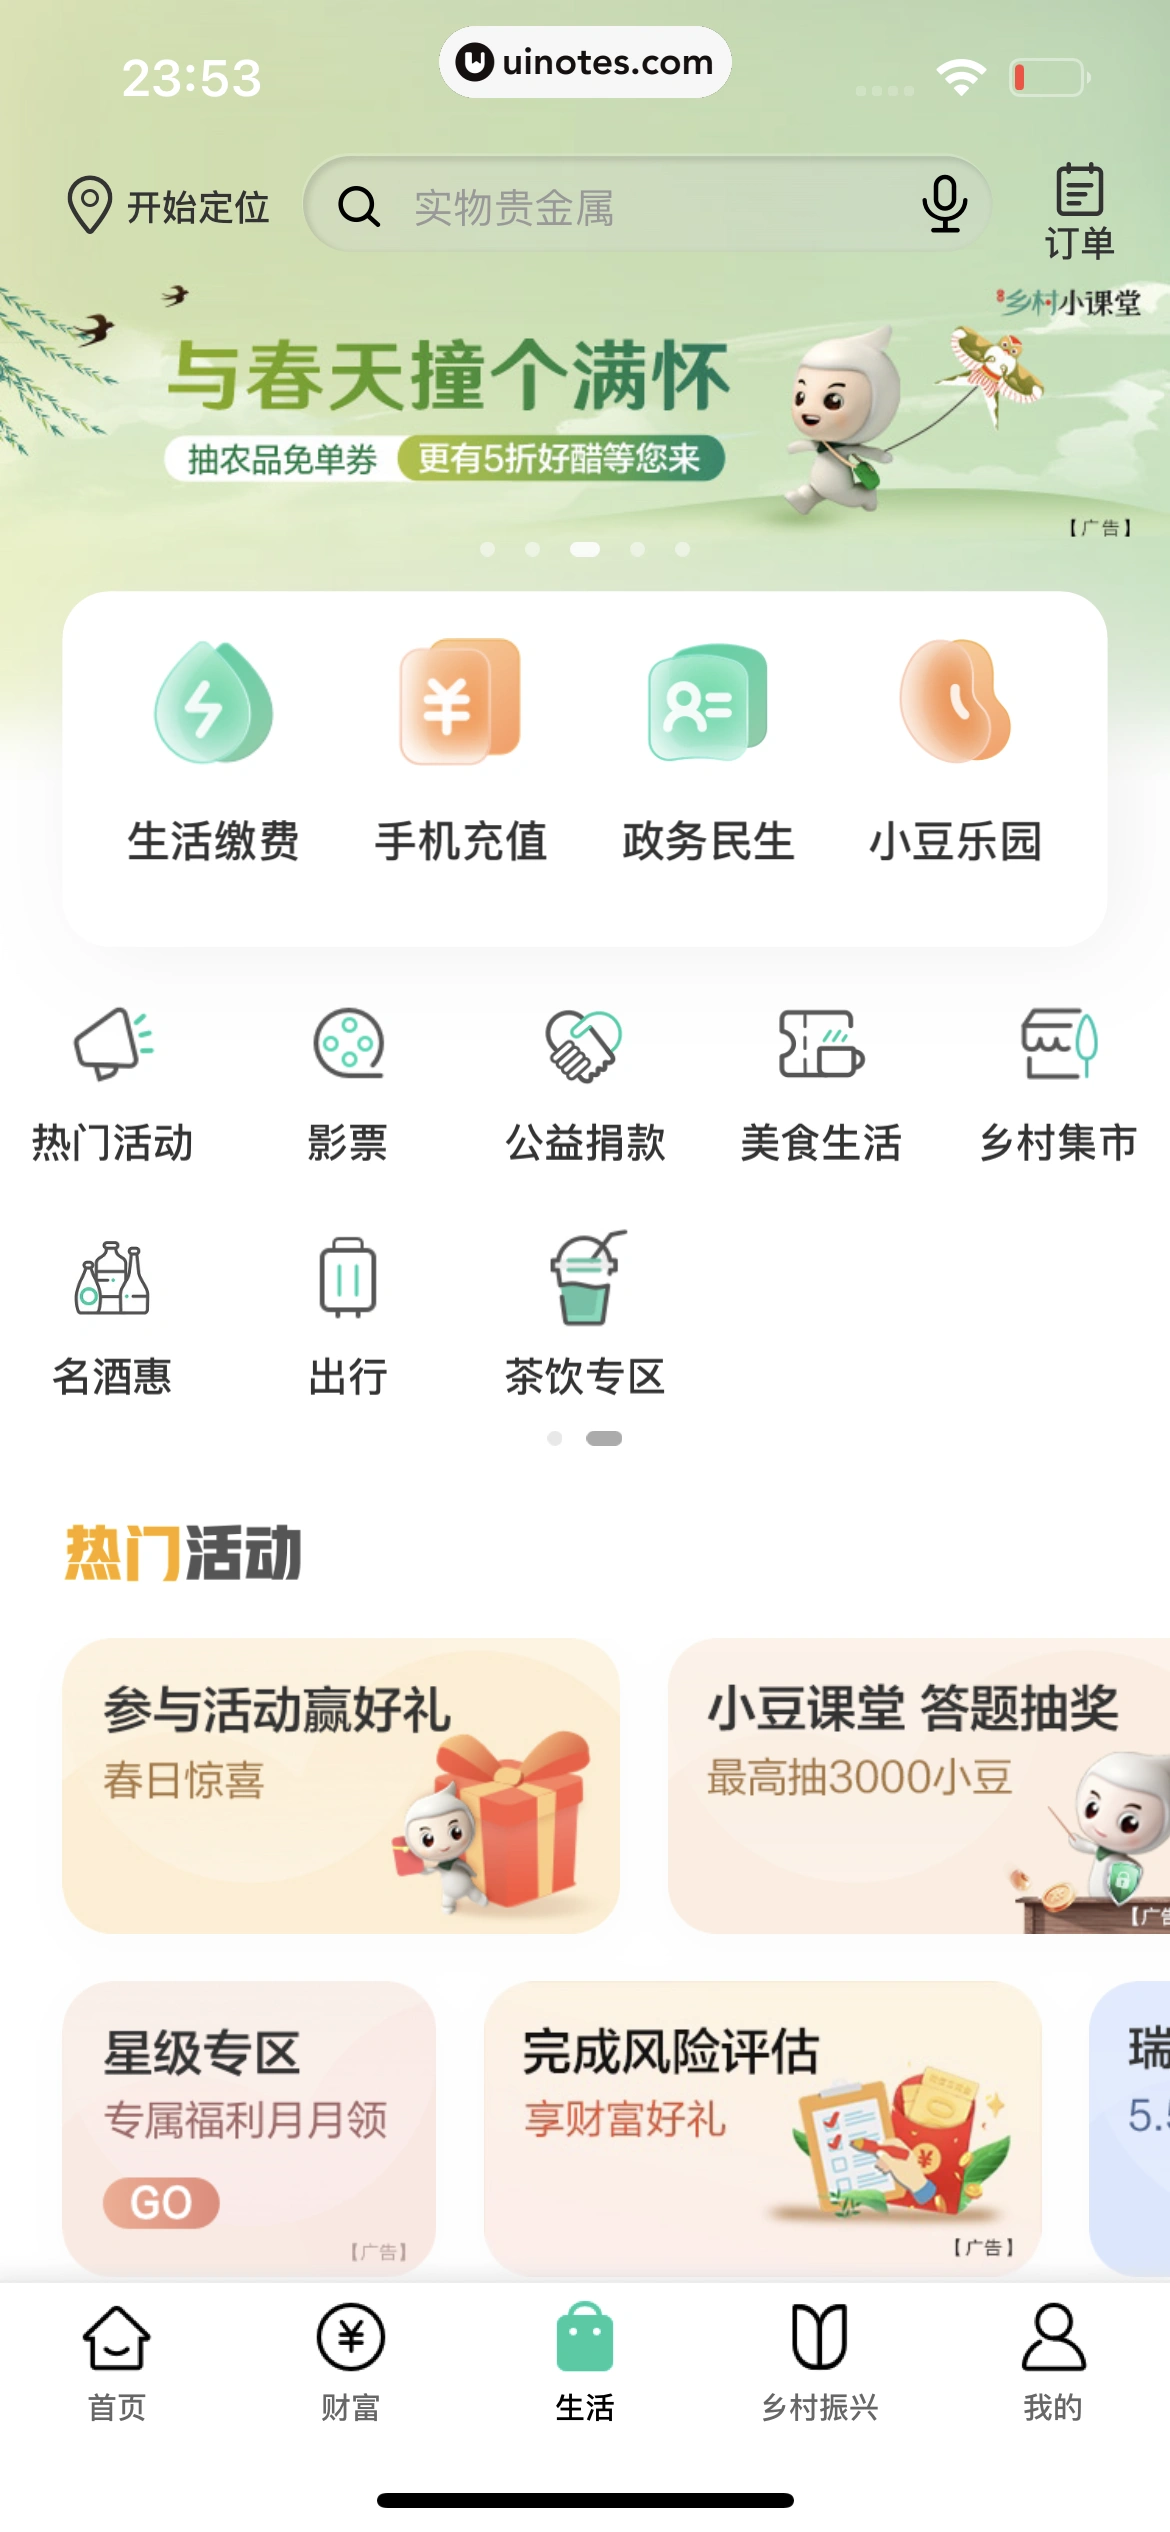 中国农业银行 App 截图 214 - UI Notes